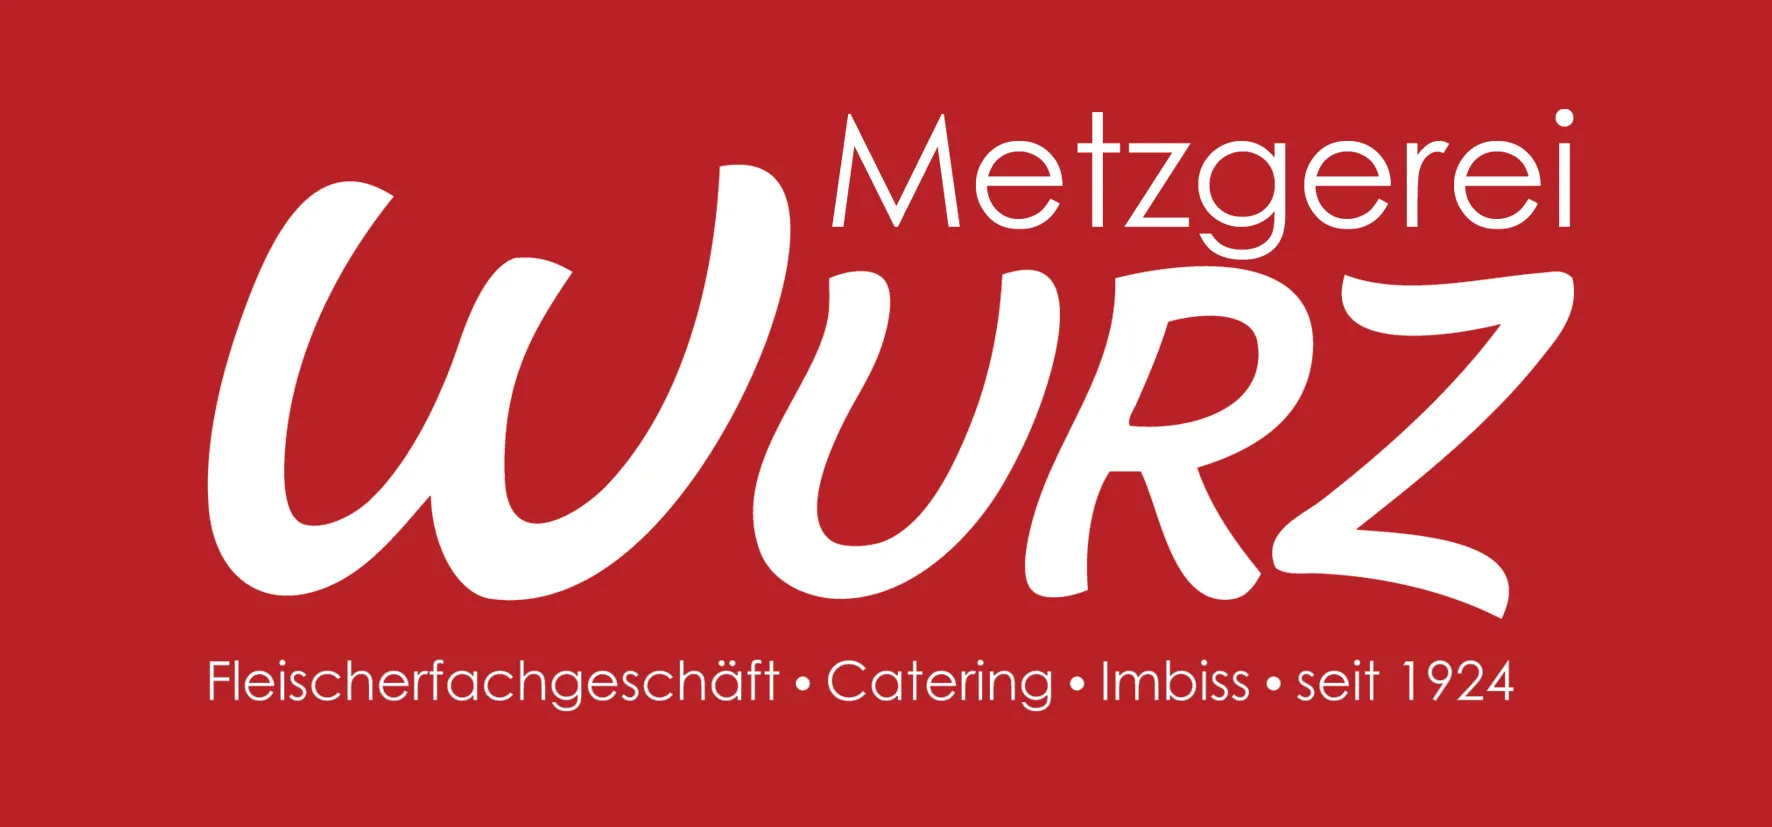 Logo-Metzgerei-Wurz